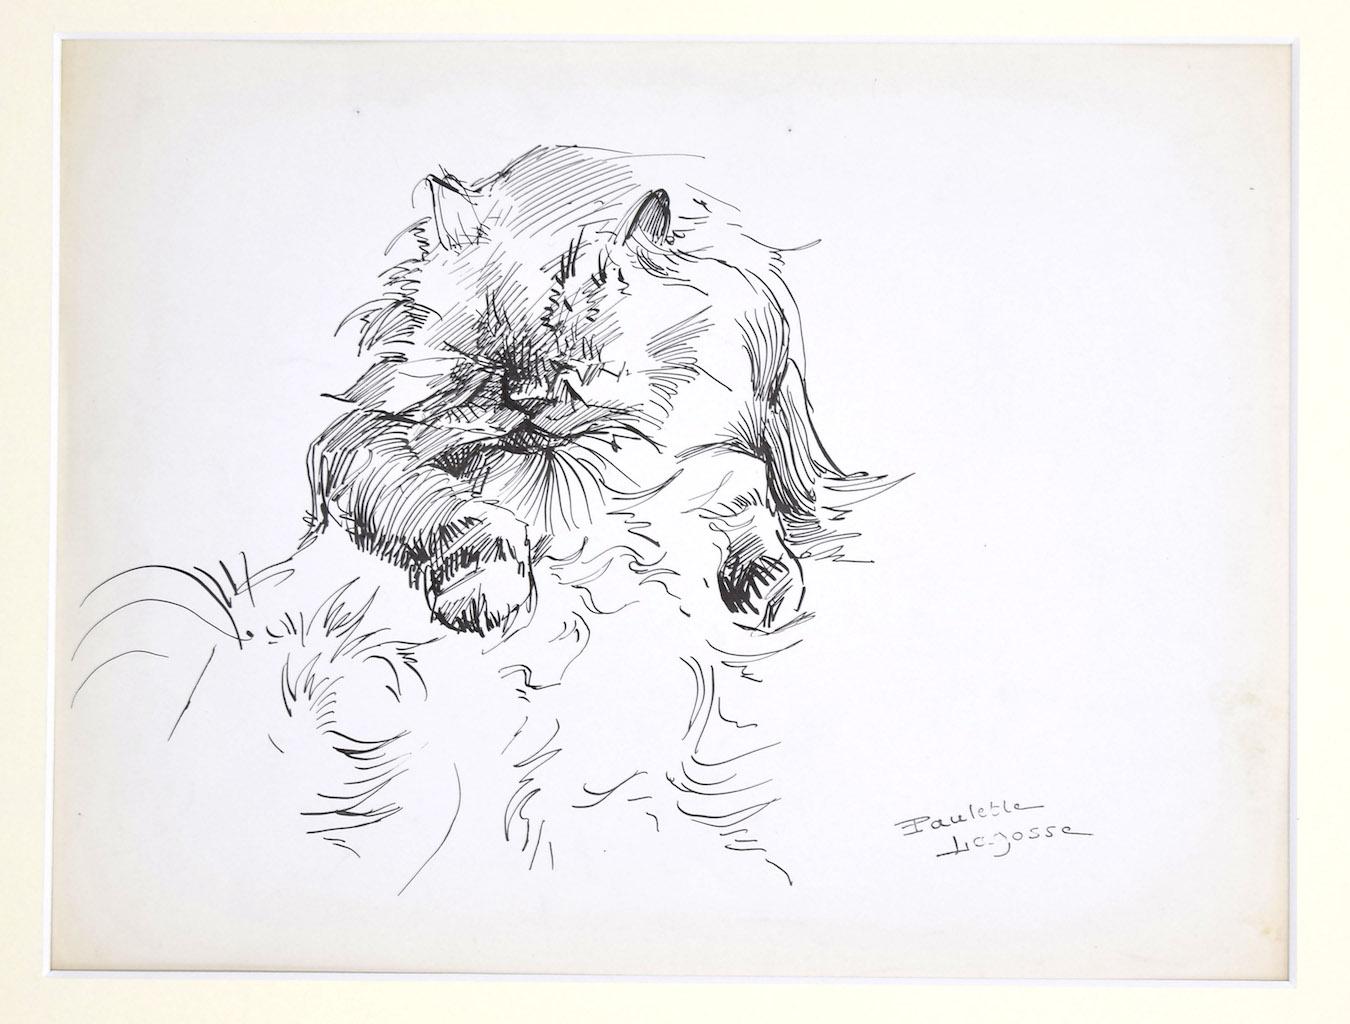 Le chat - Stylo sur papier de M. P. Lagosse - 1970